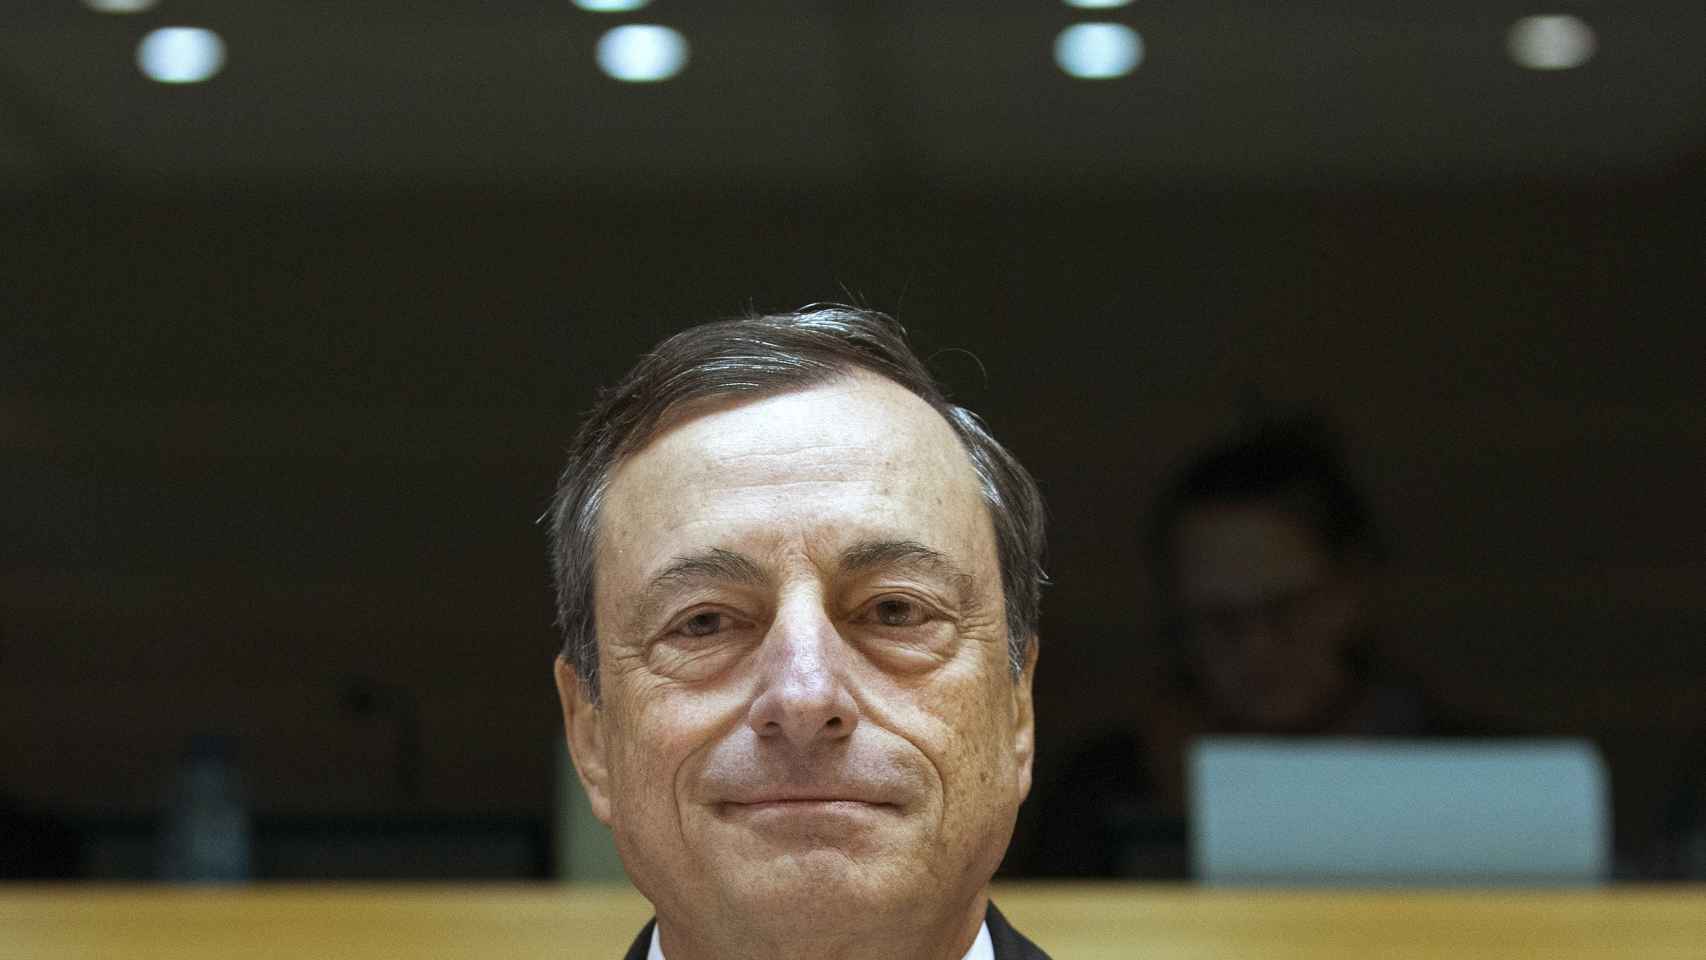 El presidente del  BCE, Mario Draghi, prepara a Europa para una nueva ronda de estímulos